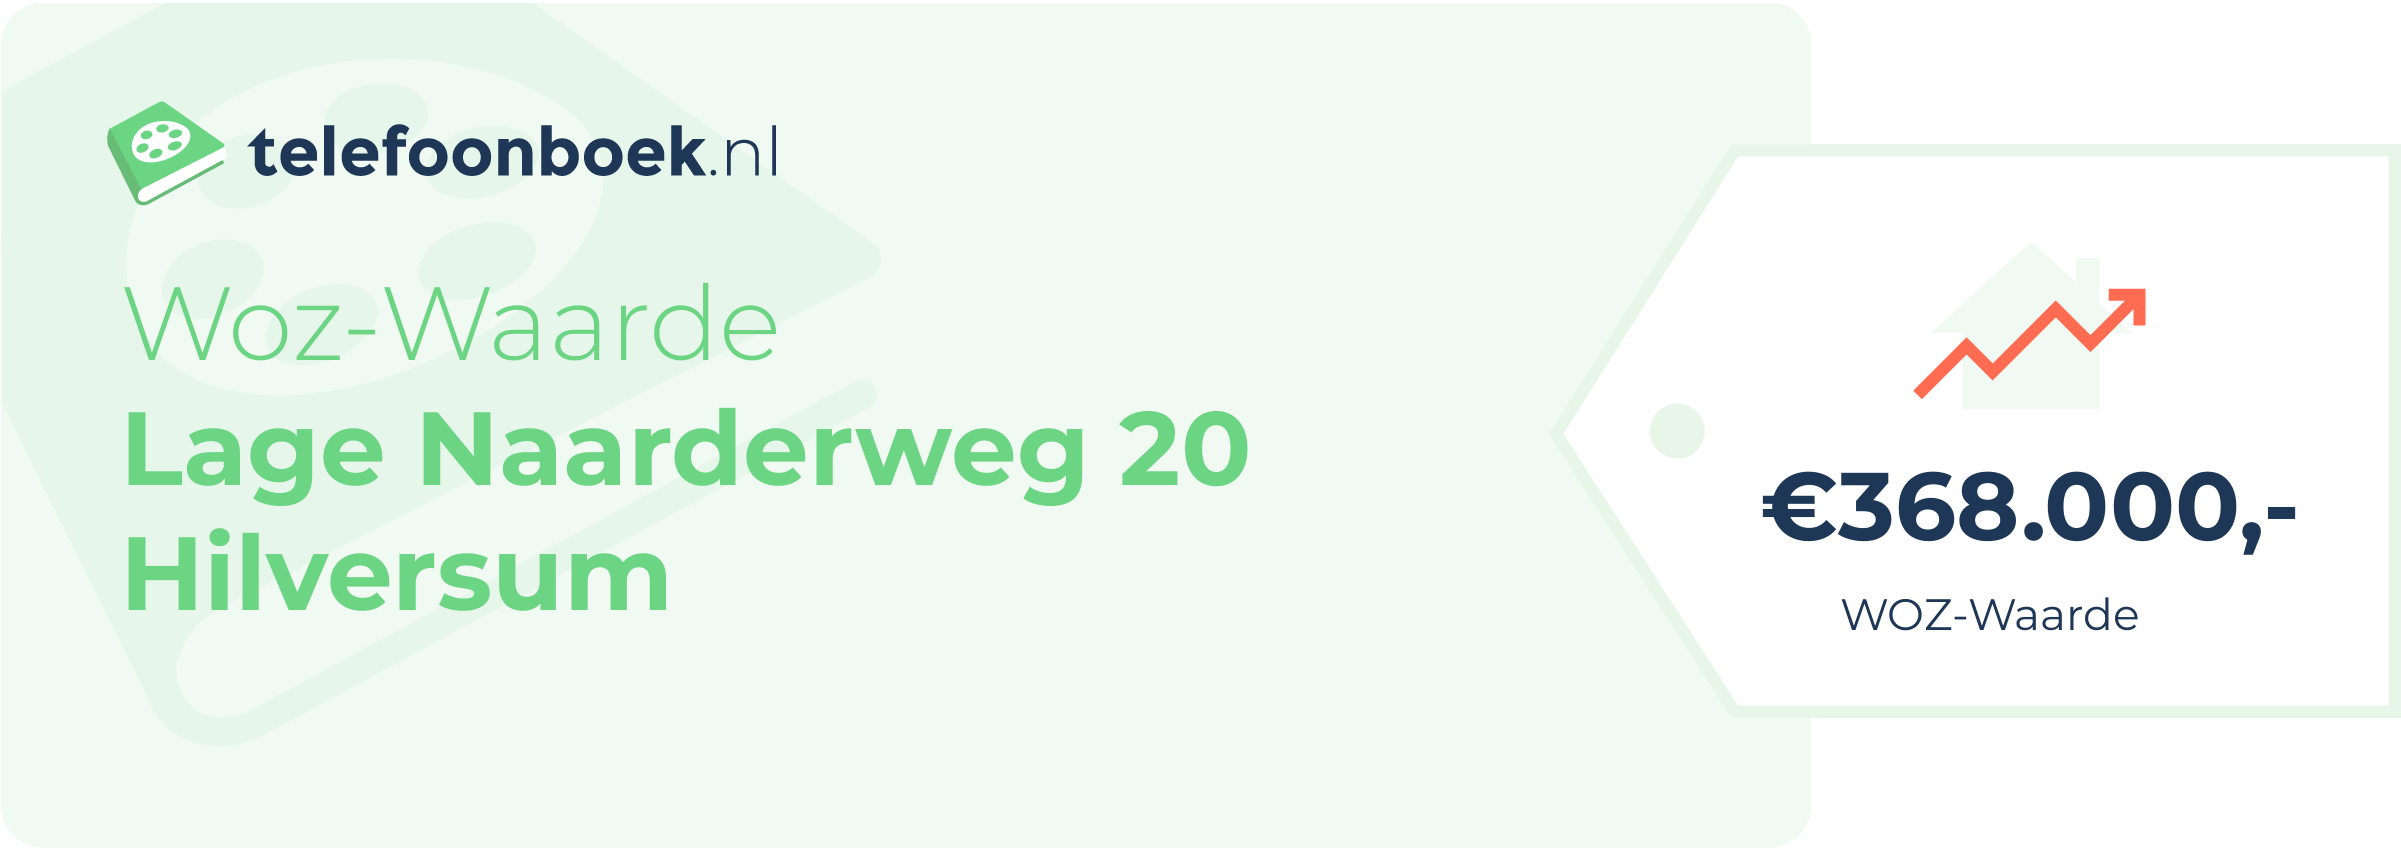 WOZ-waarde Lage Naarderweg 20 Hilversum